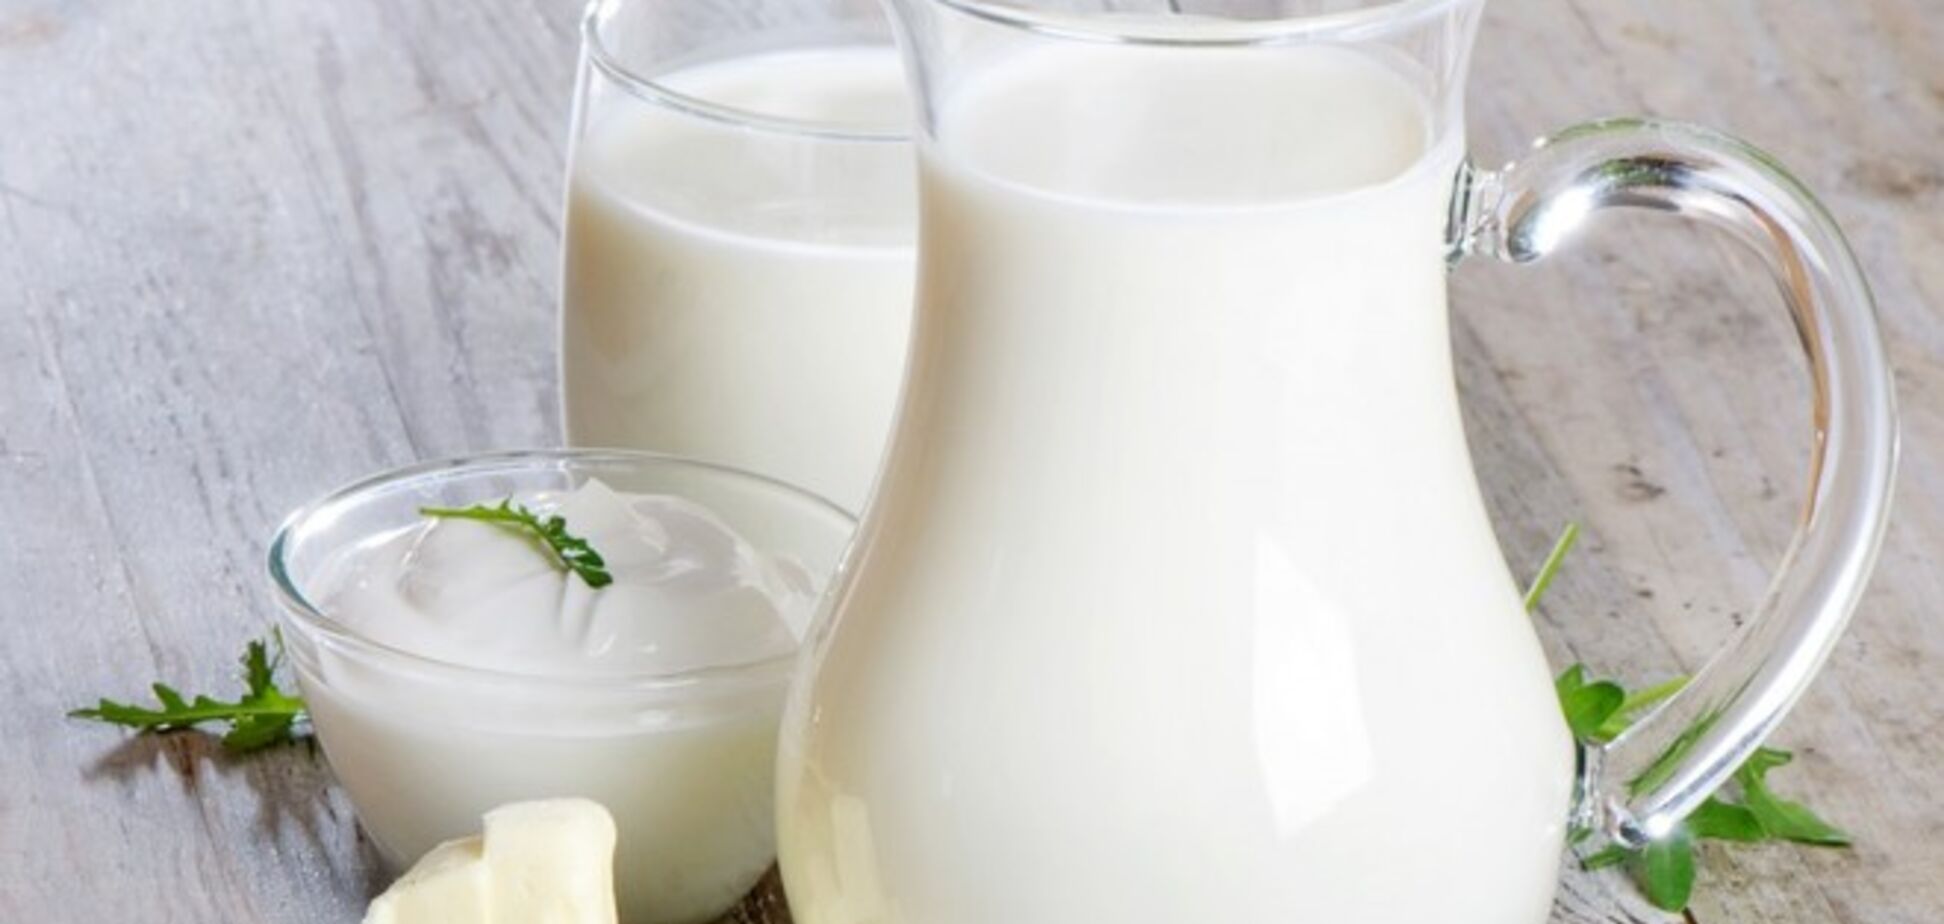 Россия решила покупать молочку в Африке